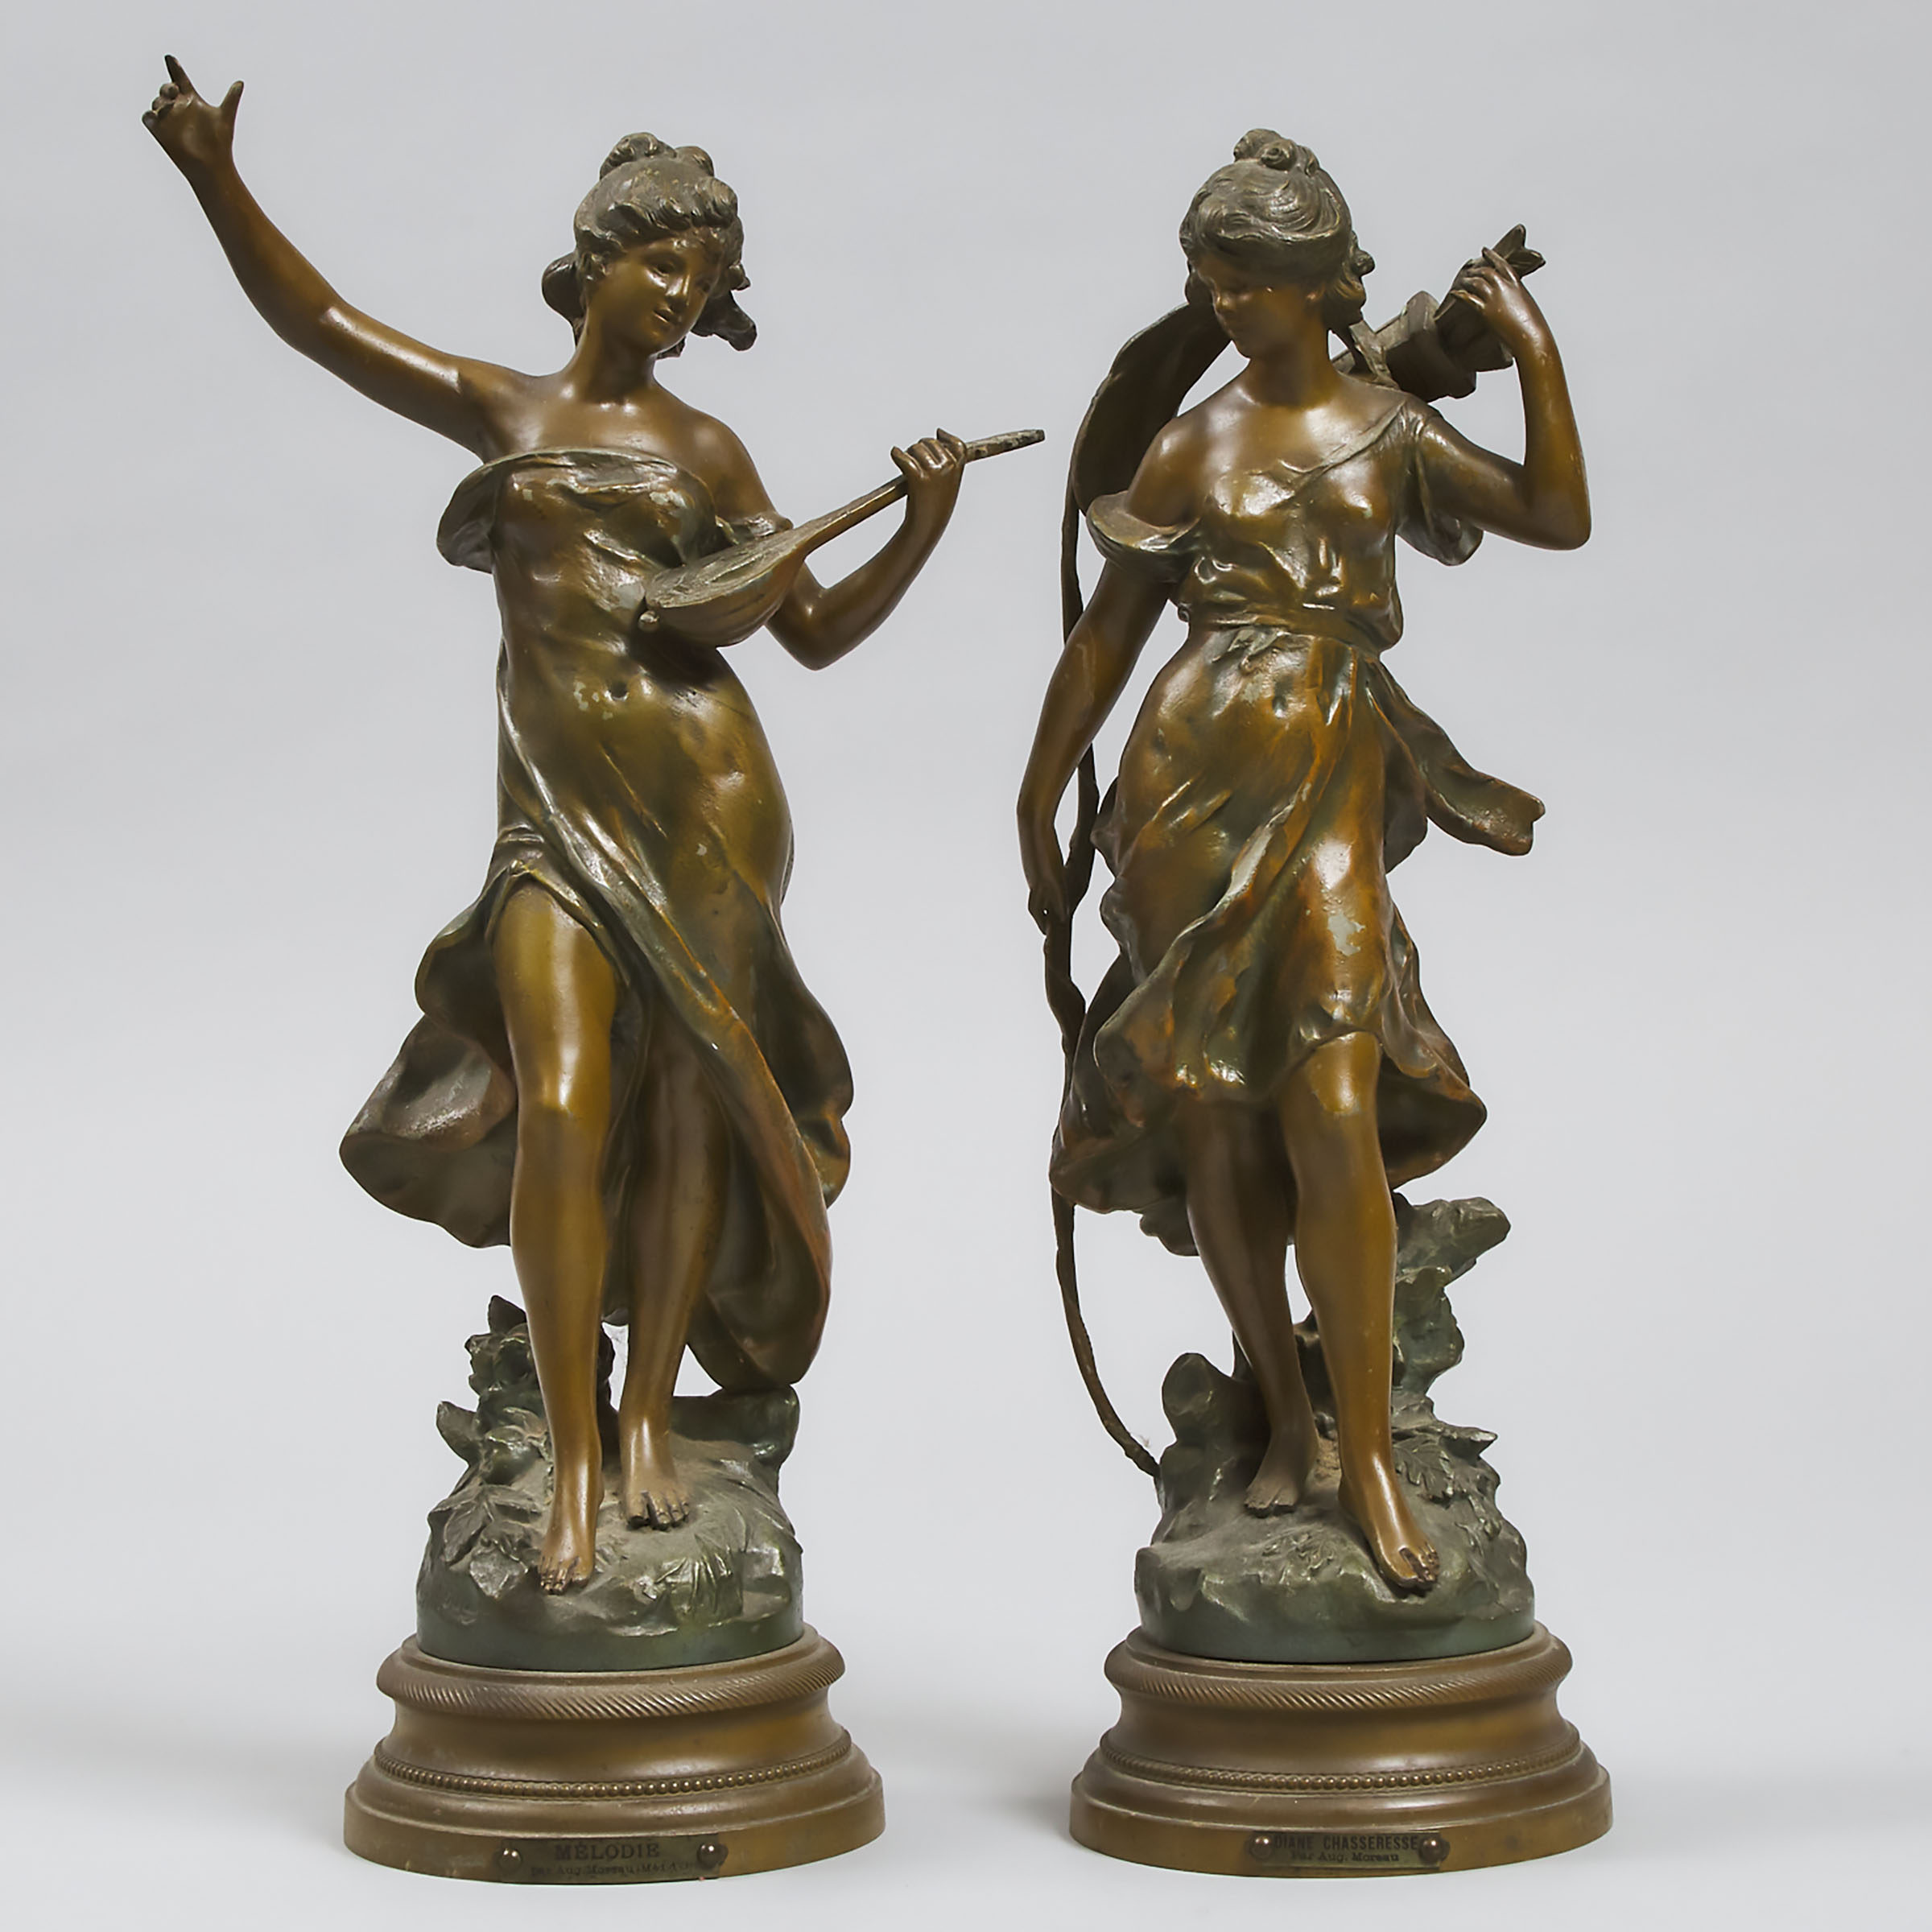 Pair of Art Nouveau Patinated Metal Figures, after Auguste Moureau c.1890